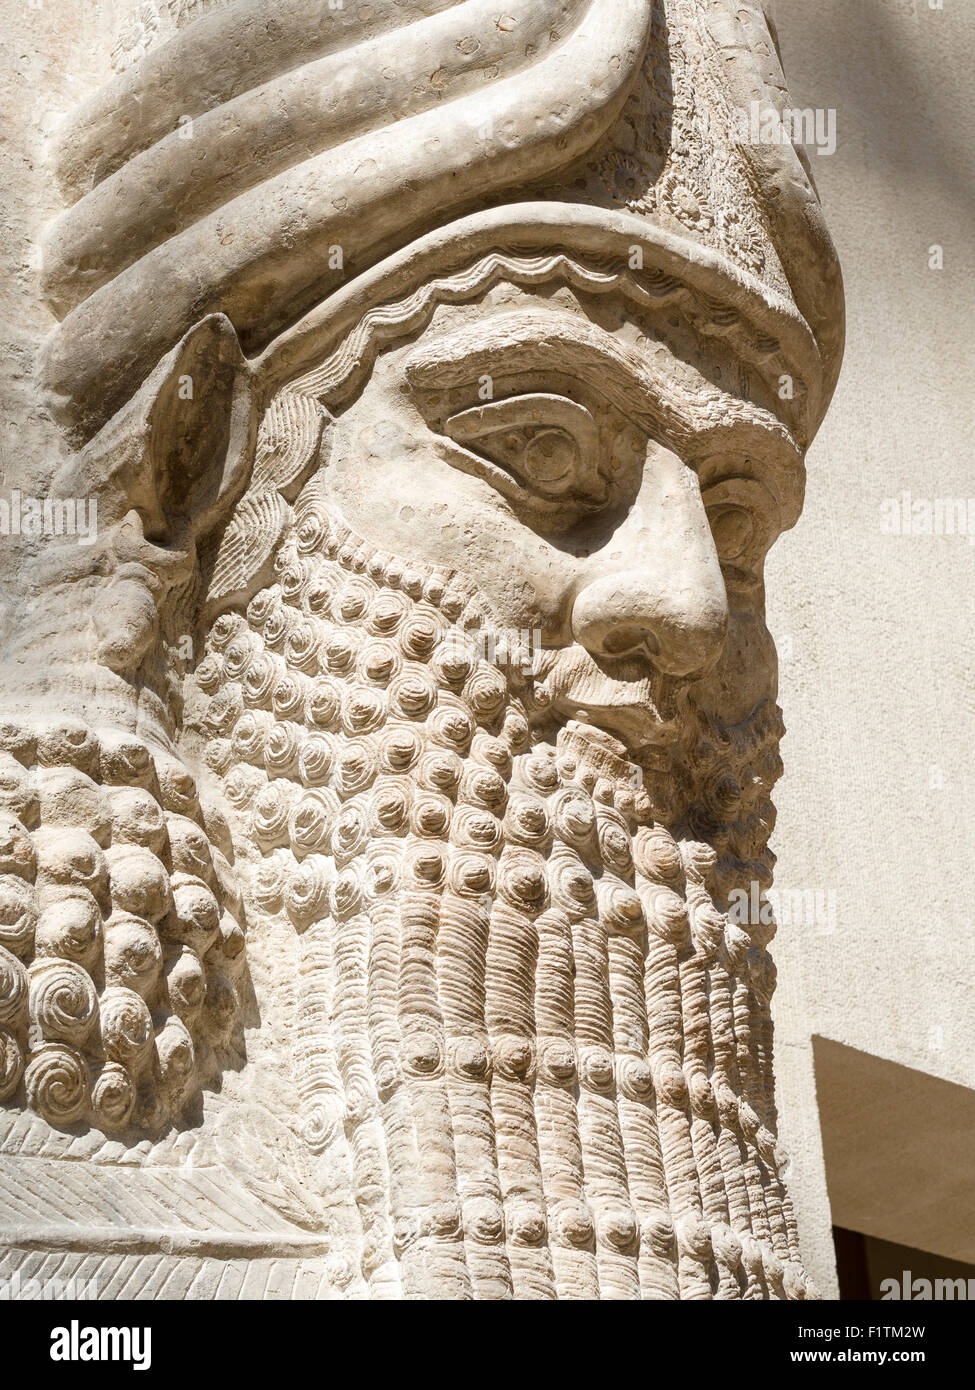 Uomo alato con testa di toro: Testa dettaglio. Originariamente parte di Sargon II capitale della Dur Sharrukin, ora Khorsabad. Dal Louvre D Foto Stock